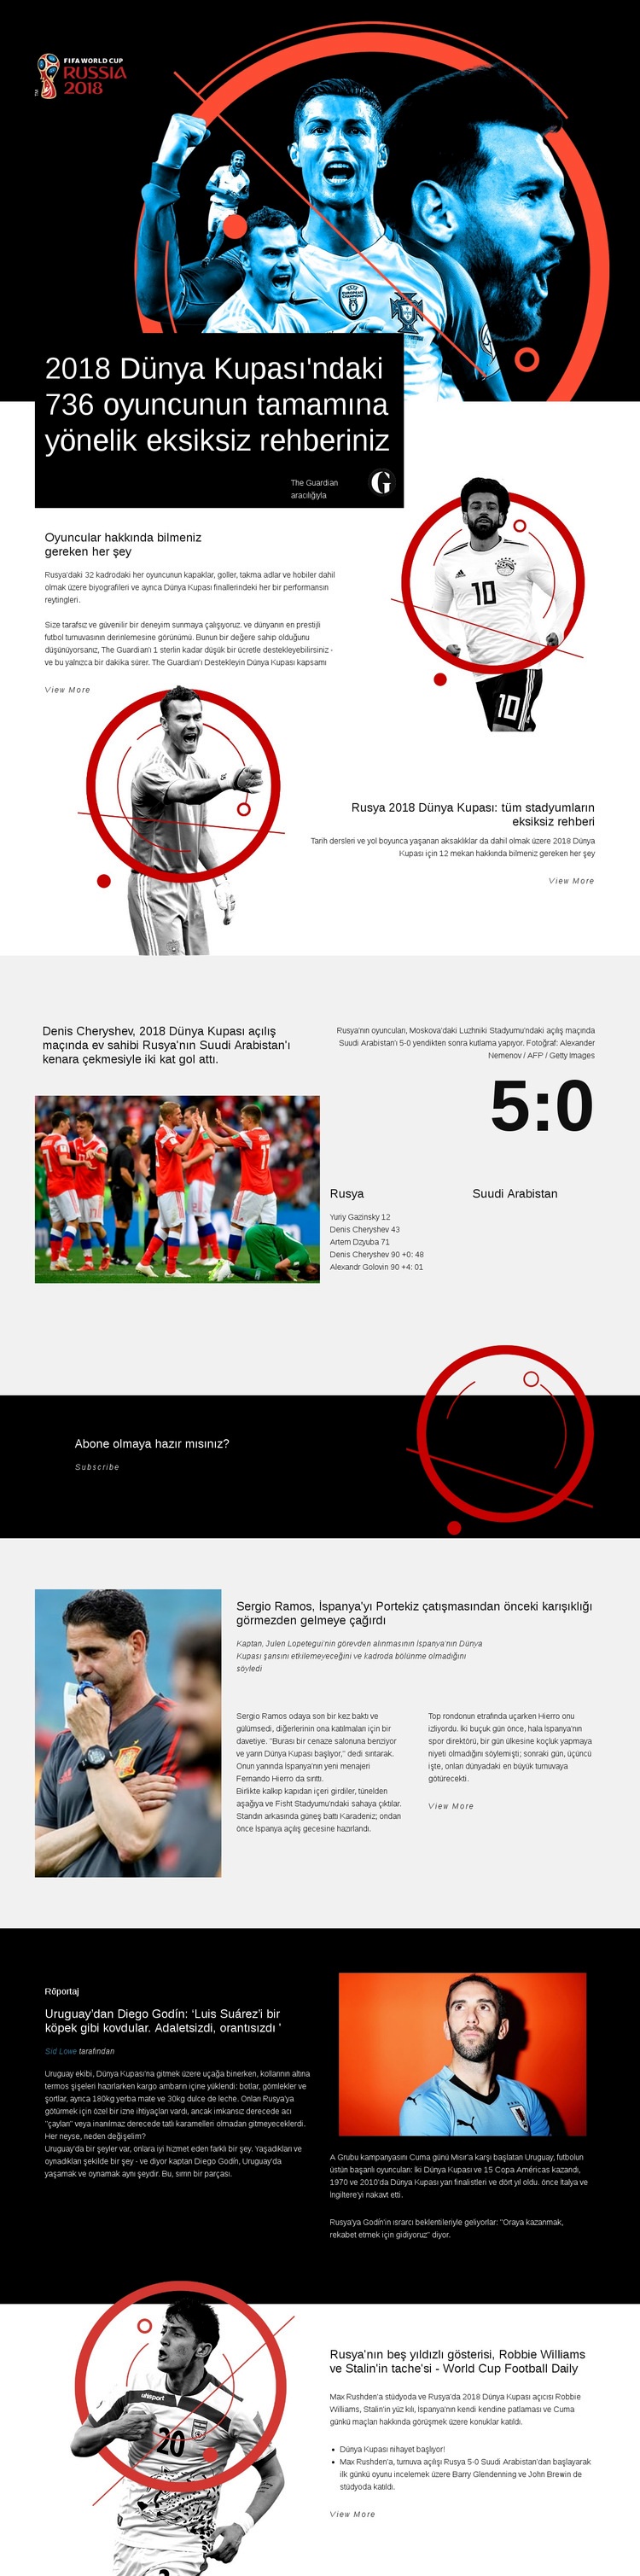 Dünya Kupası 2018 Web Sitesi Mockup'ı